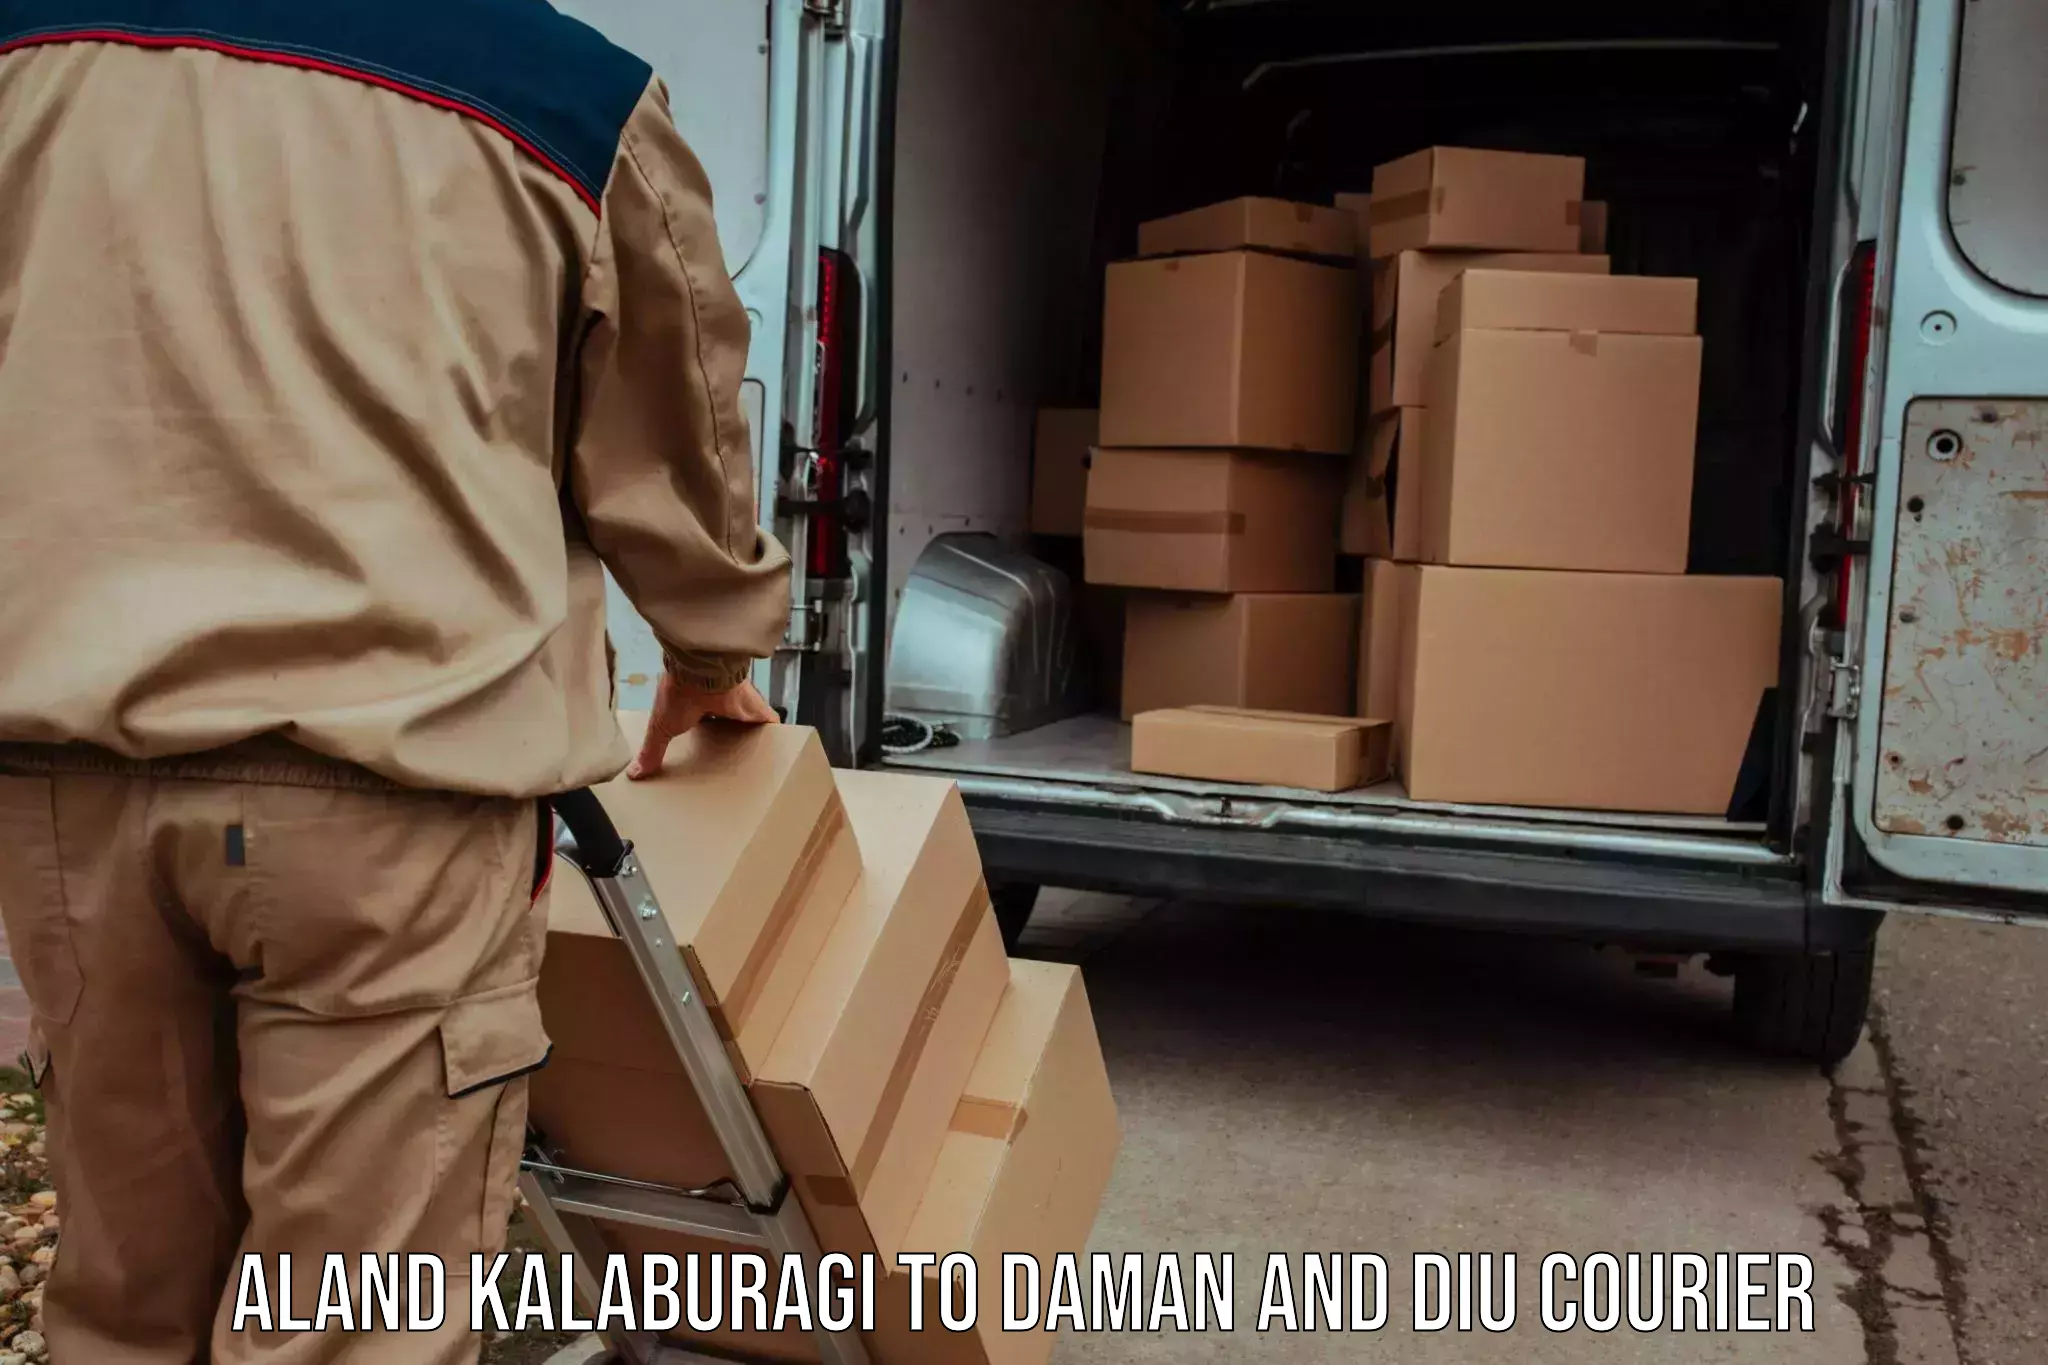 Express delivery solutions Aland Kalaburagi to Daman and Diu